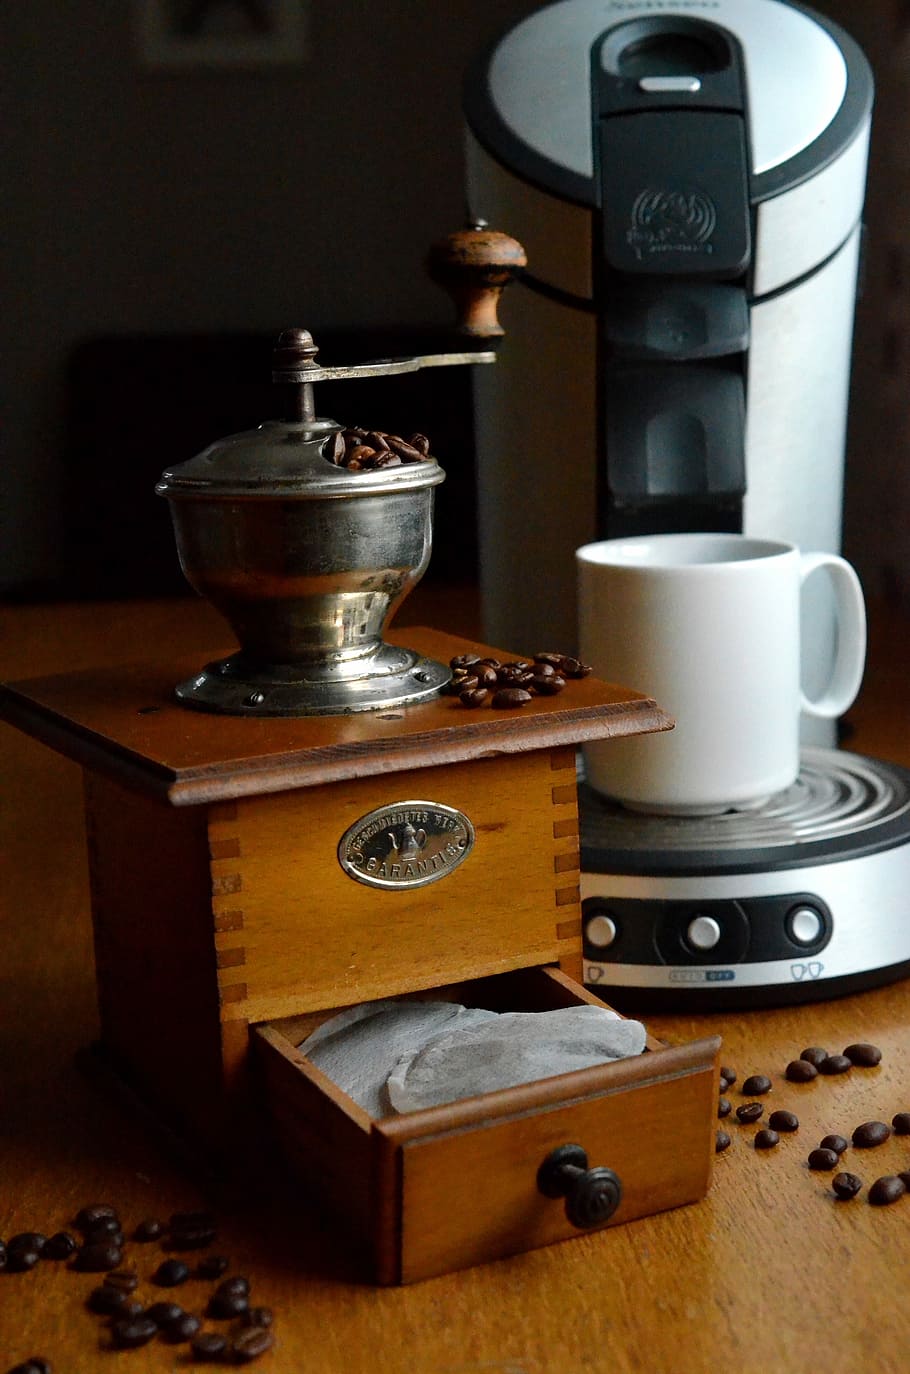 茶色, 木製, コーヒーグラインダー, コーヒーメーカー, コーヒー, グラインダー, パッド, 茶, 豆, コーヒーパッド